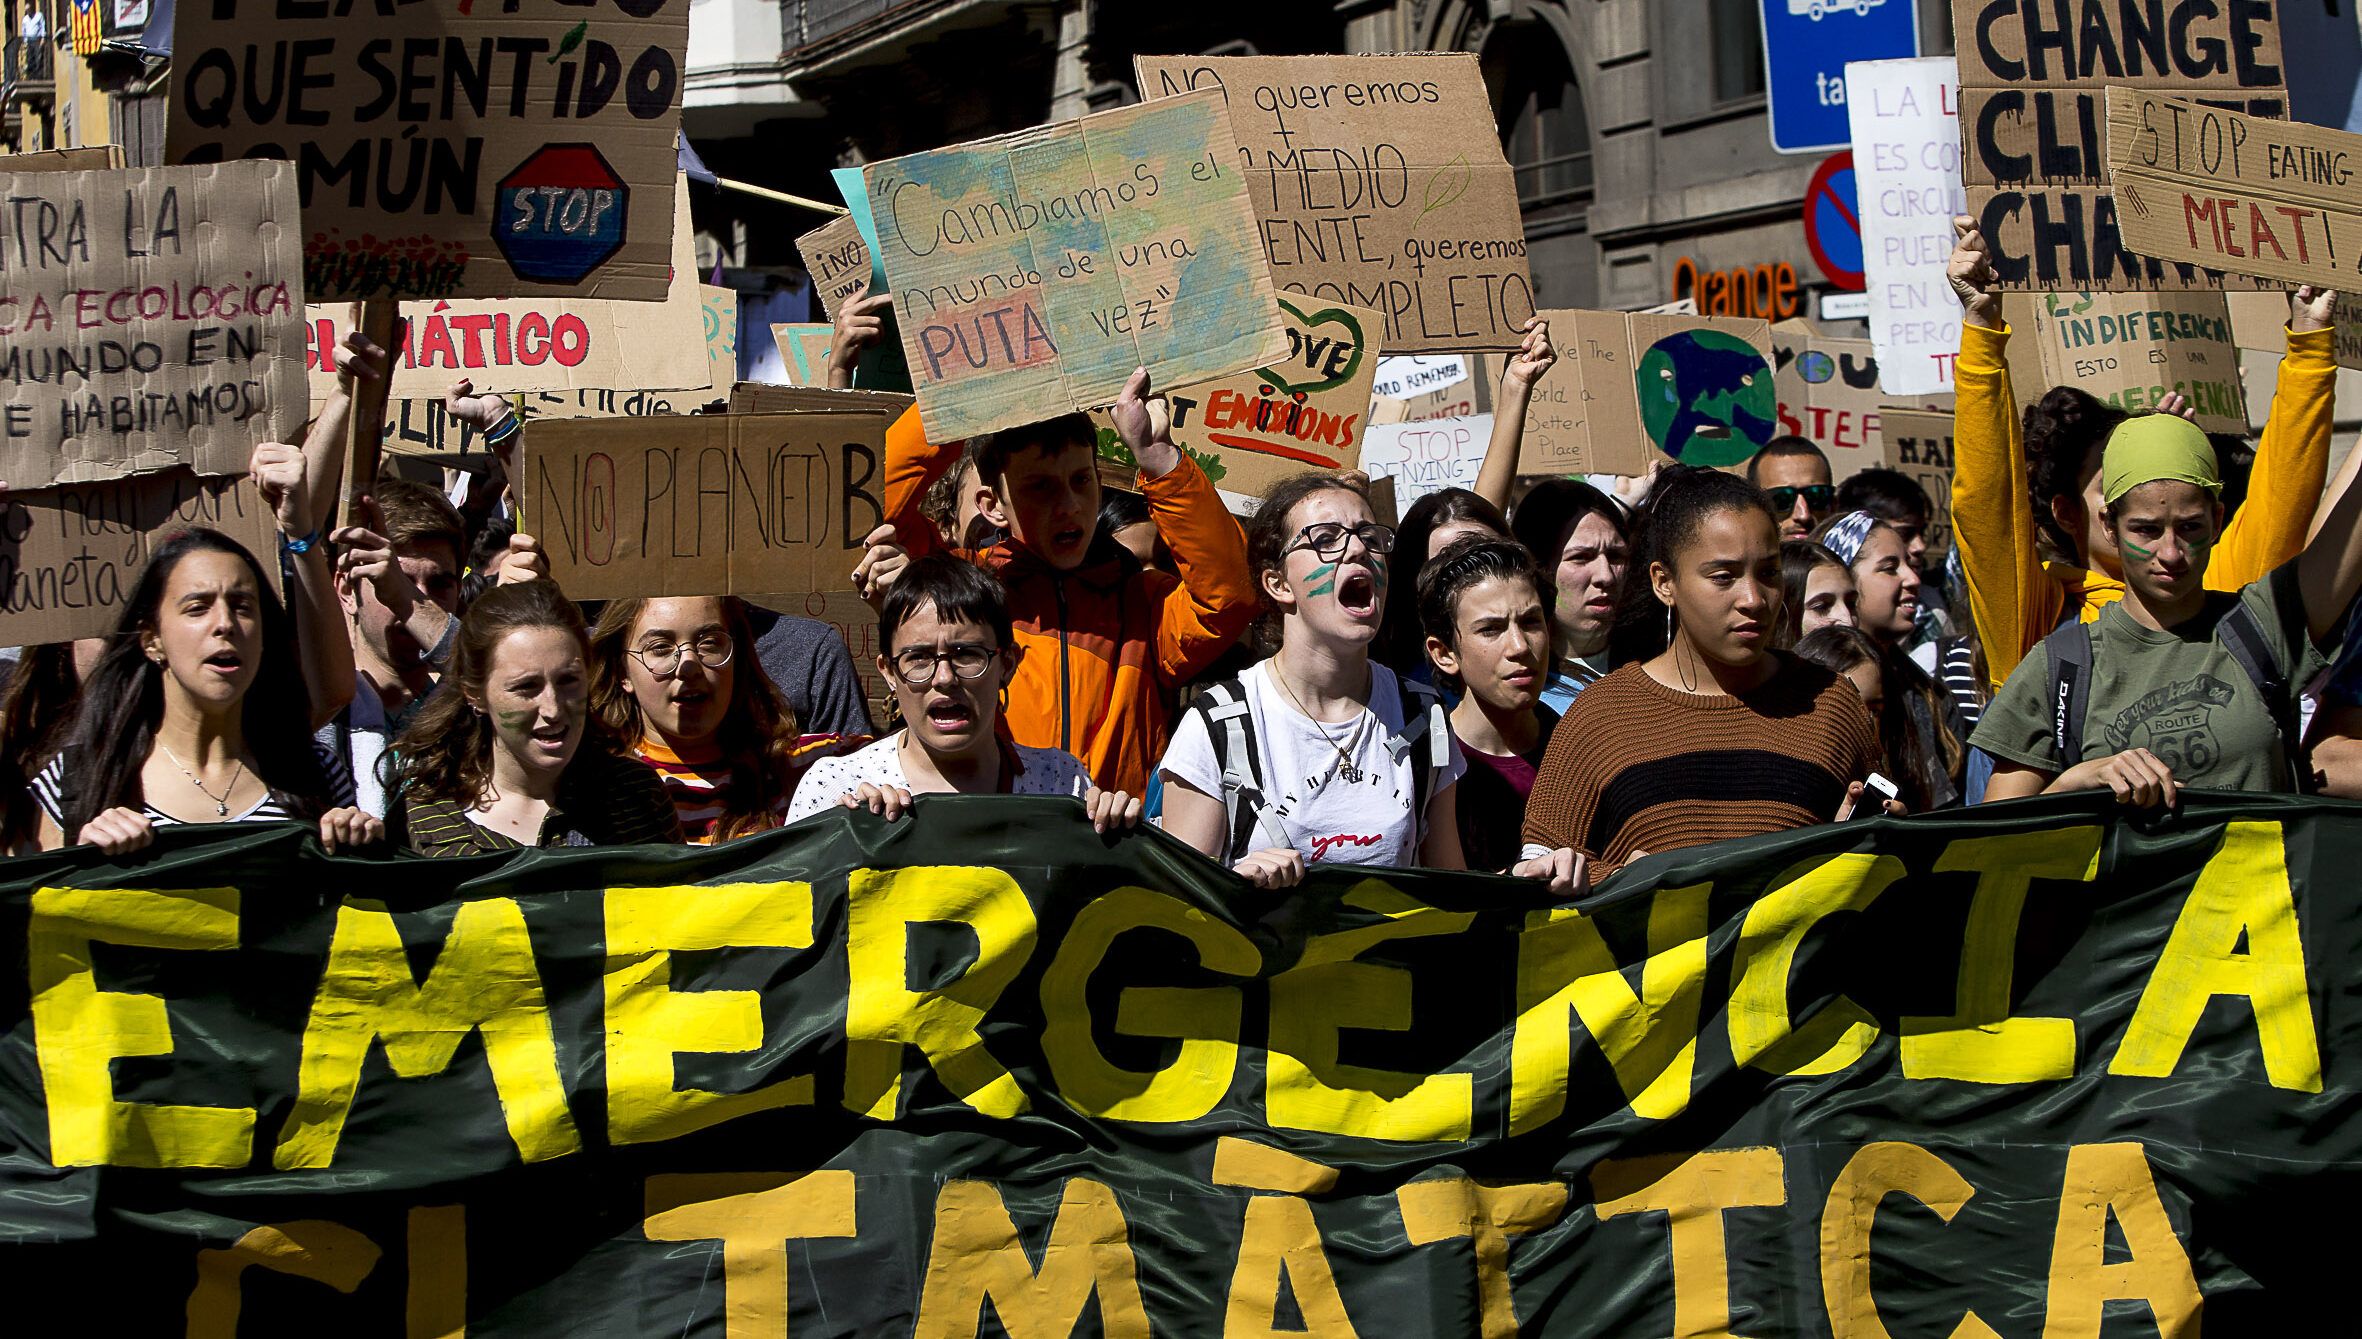 Manifestació contra el canvi climàtic a Barcelona de Fridays for Future. Fotografia: Albert Salamé.